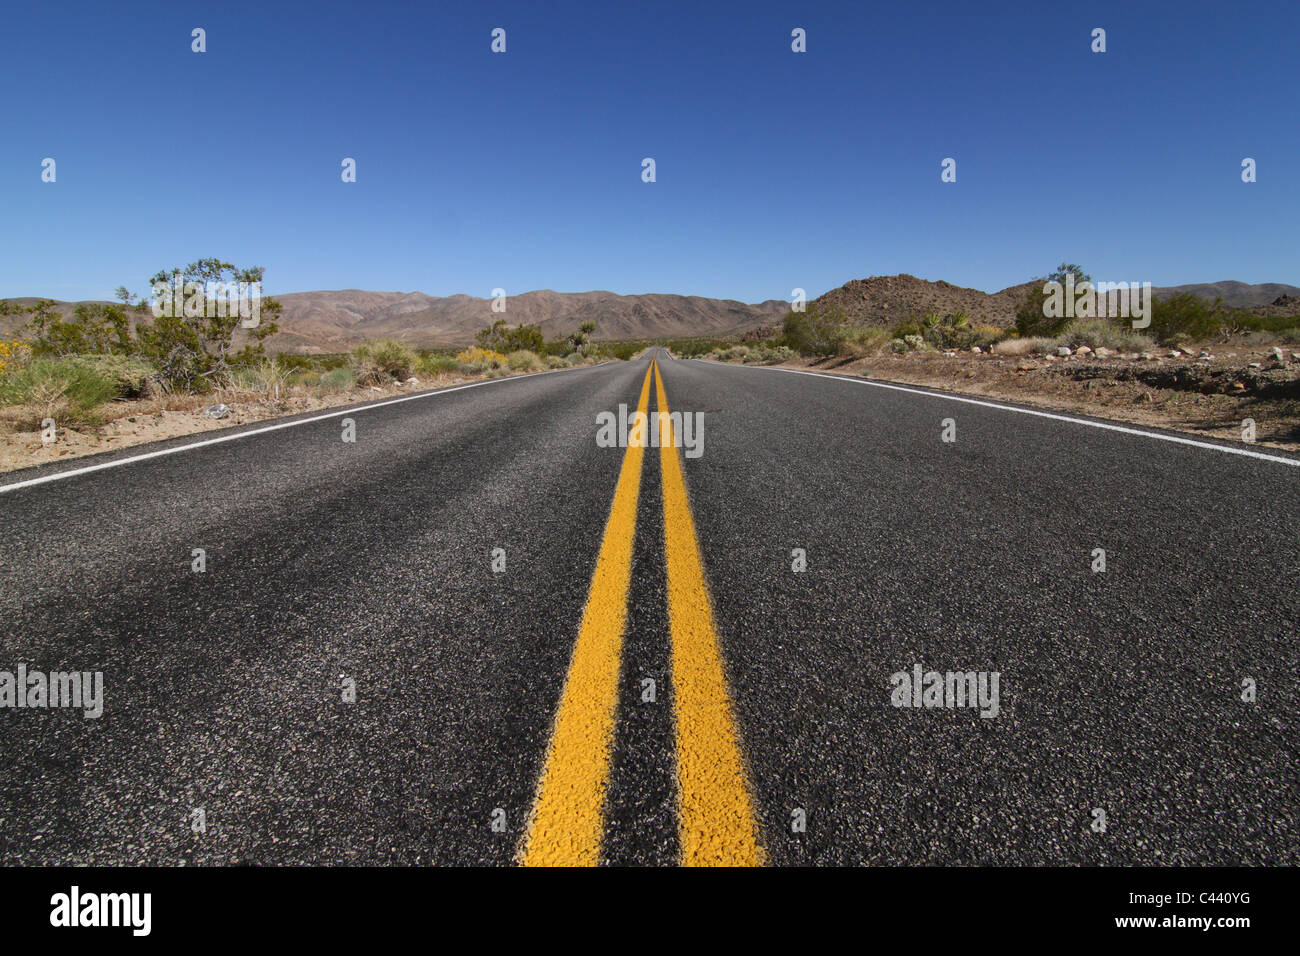 Ein Blick auf die offene Straße durch eine weite leere Wüste laufen. Stockfoto